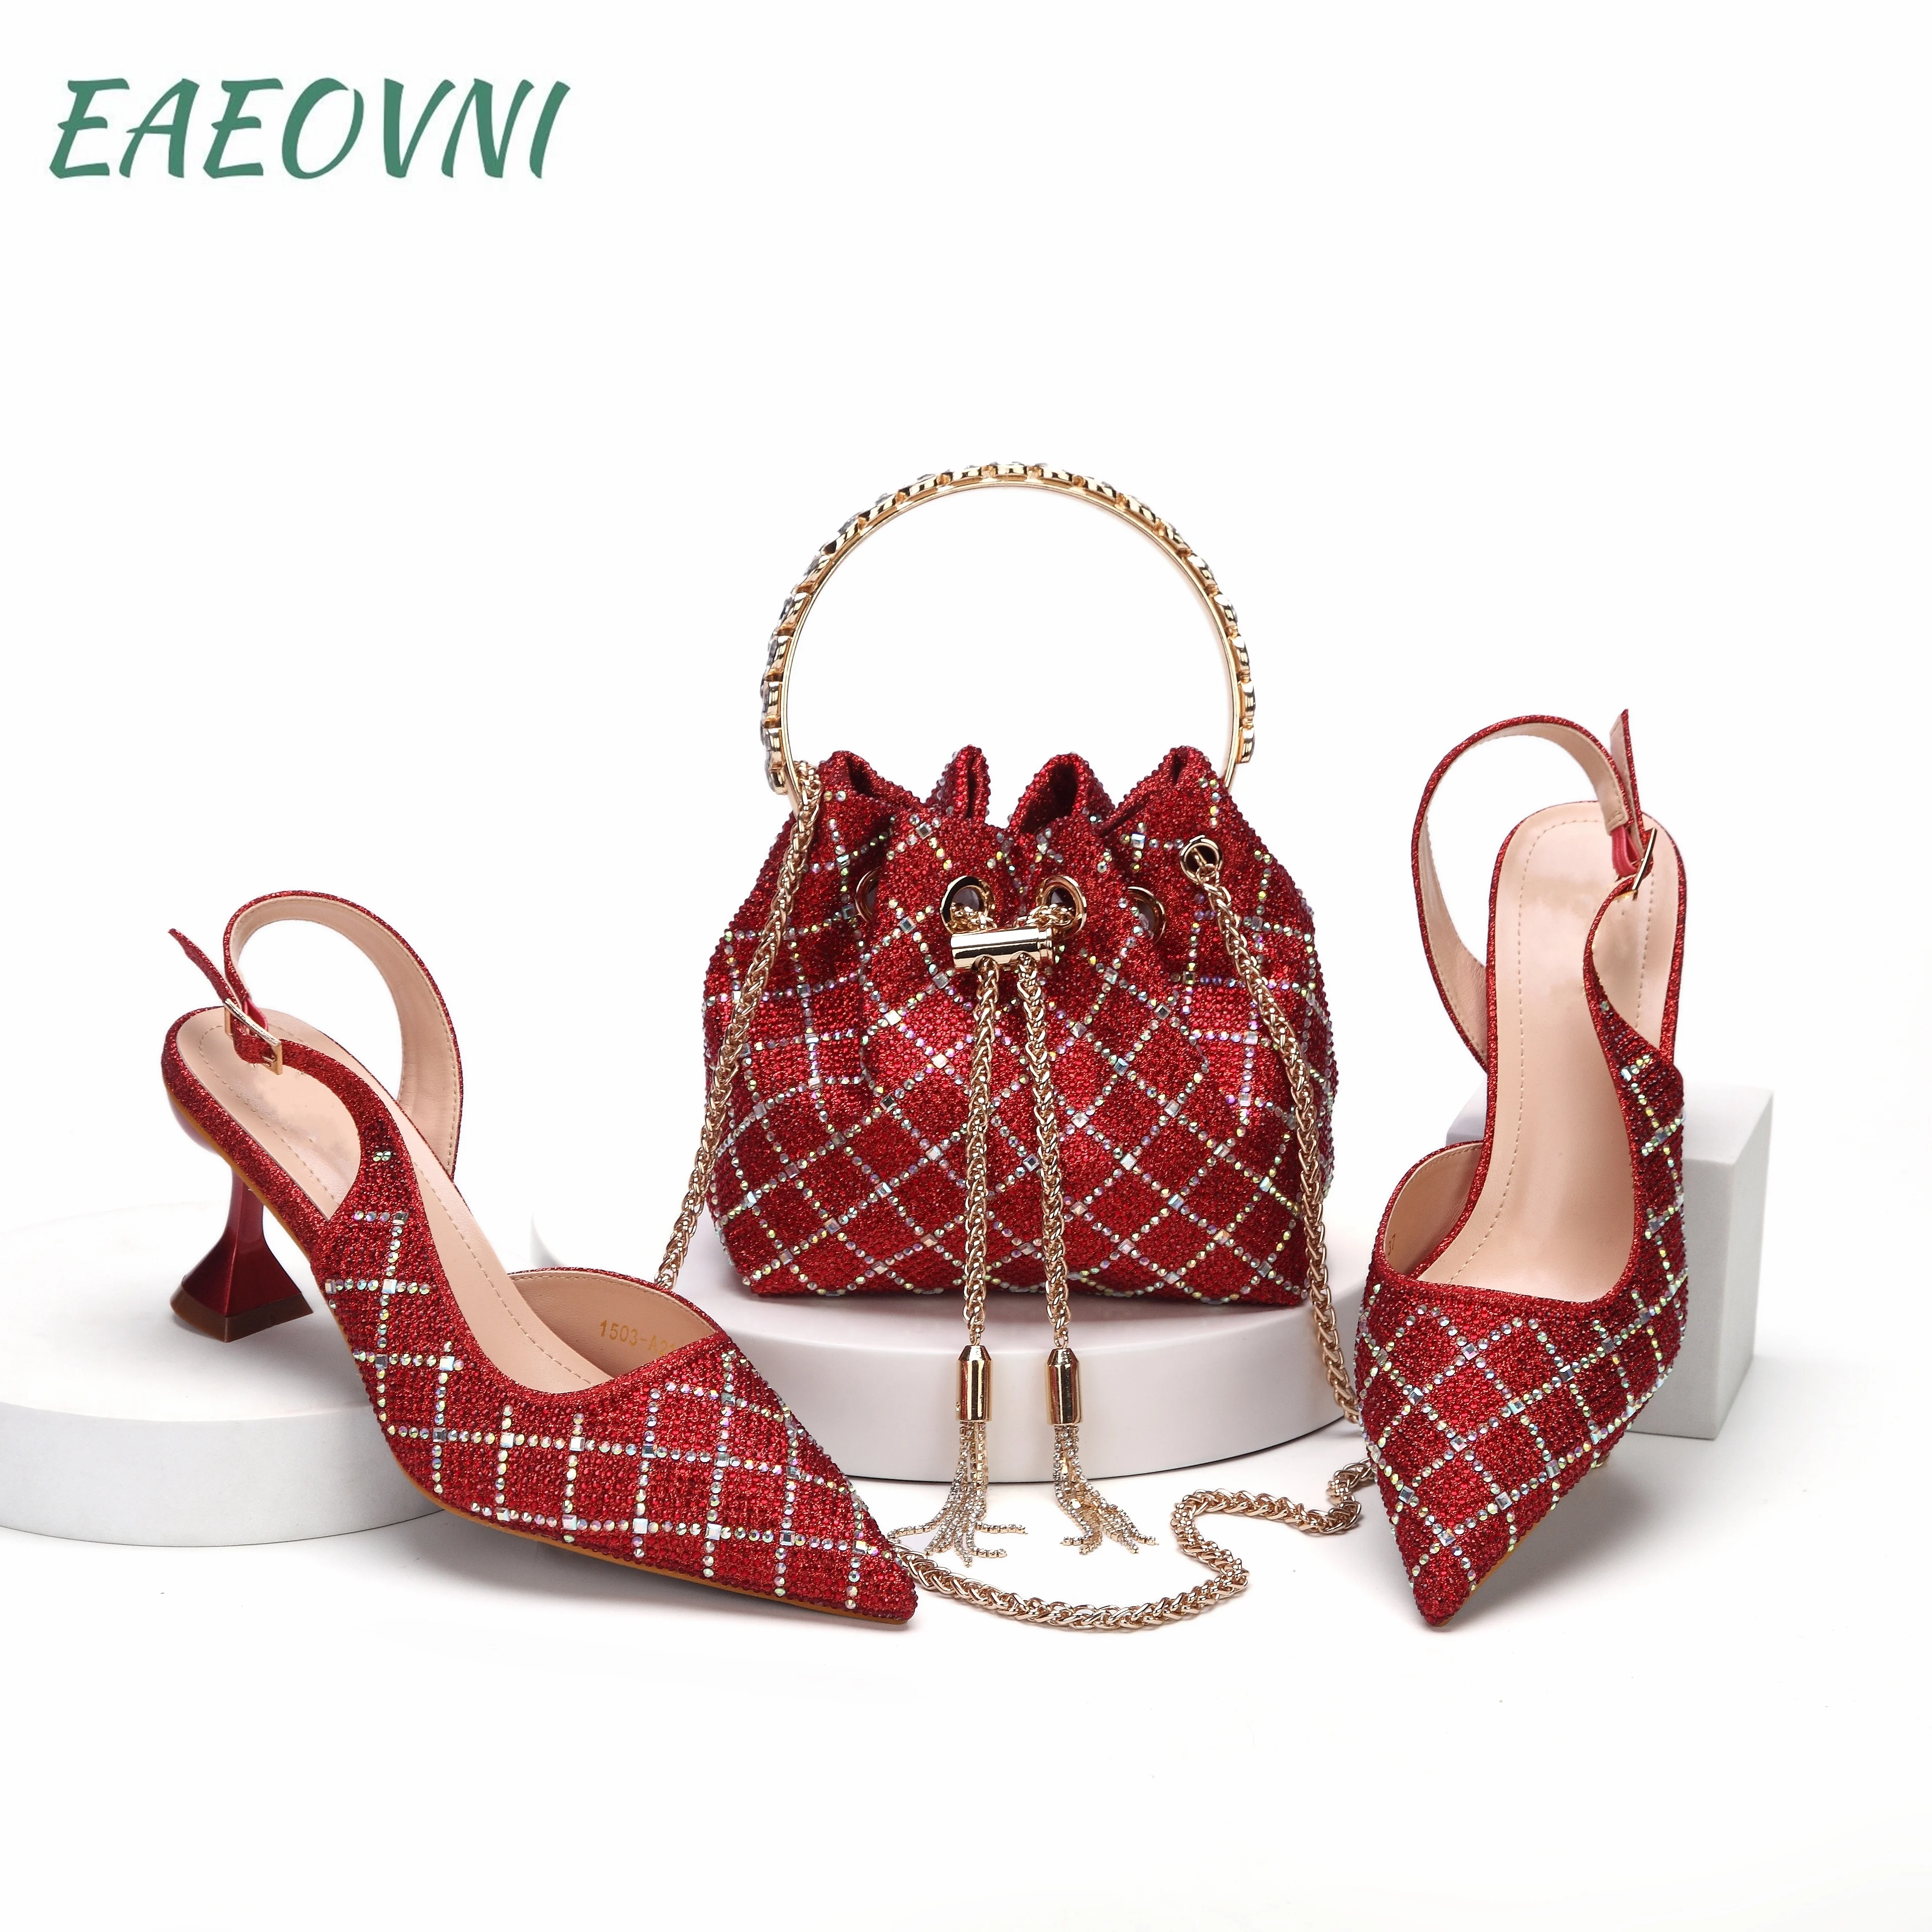 Красный итальянский дизайн, благородная трехмерная сумка двойного назначения и женские туфли на каблуке, блестящий материал для нигерийской свадьбы